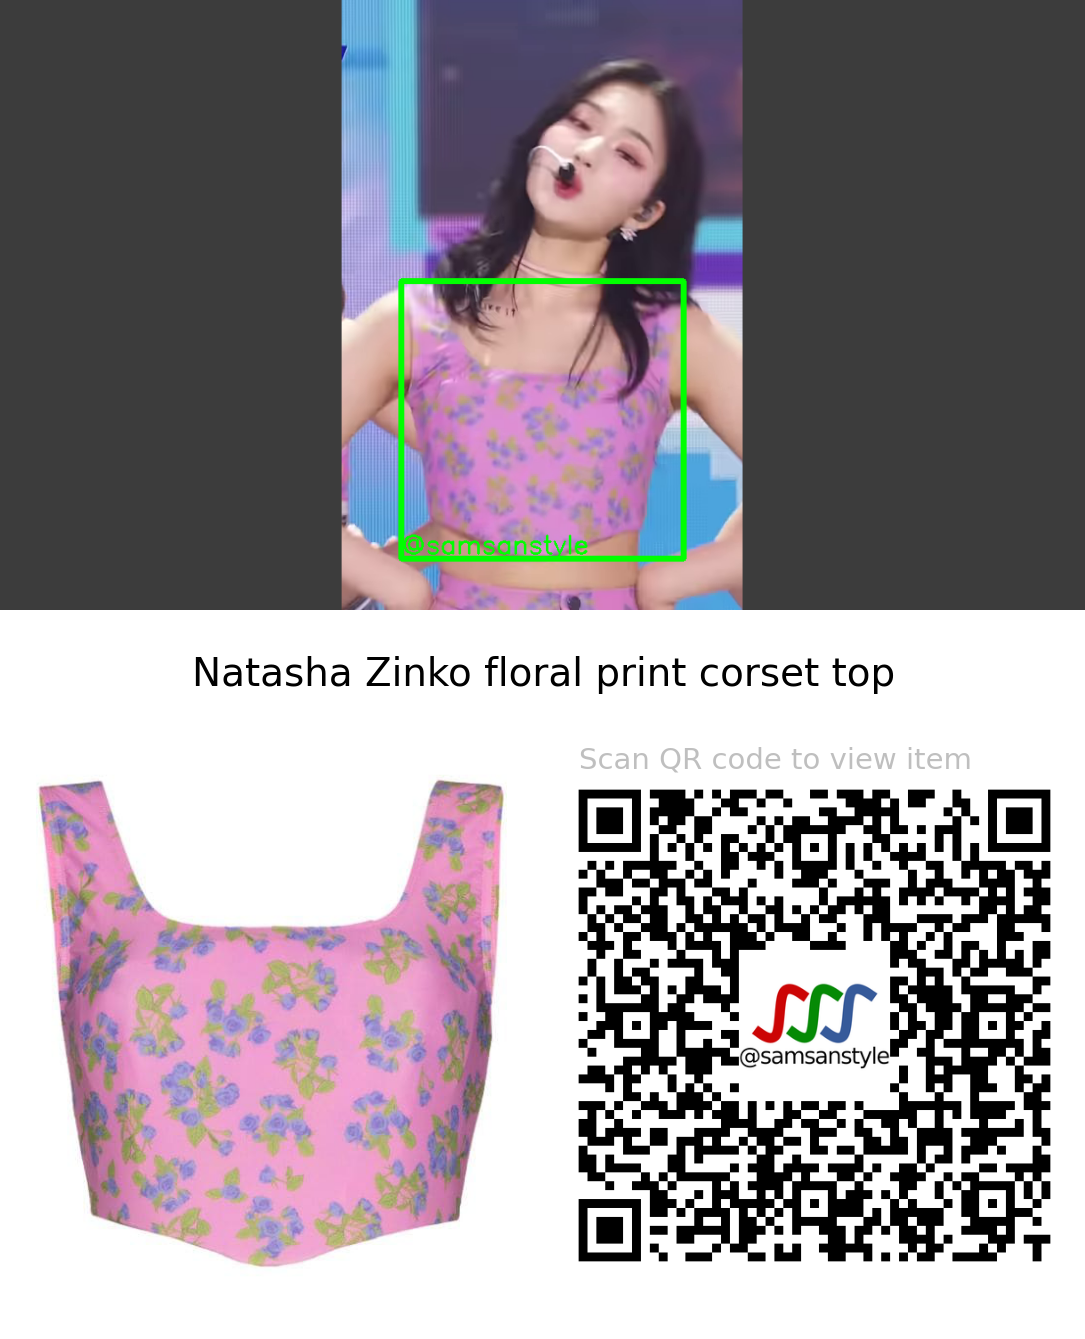 STAYC Isa | I LIKE IT SBS MTV The Show | Natasha Zinko floral print corset top